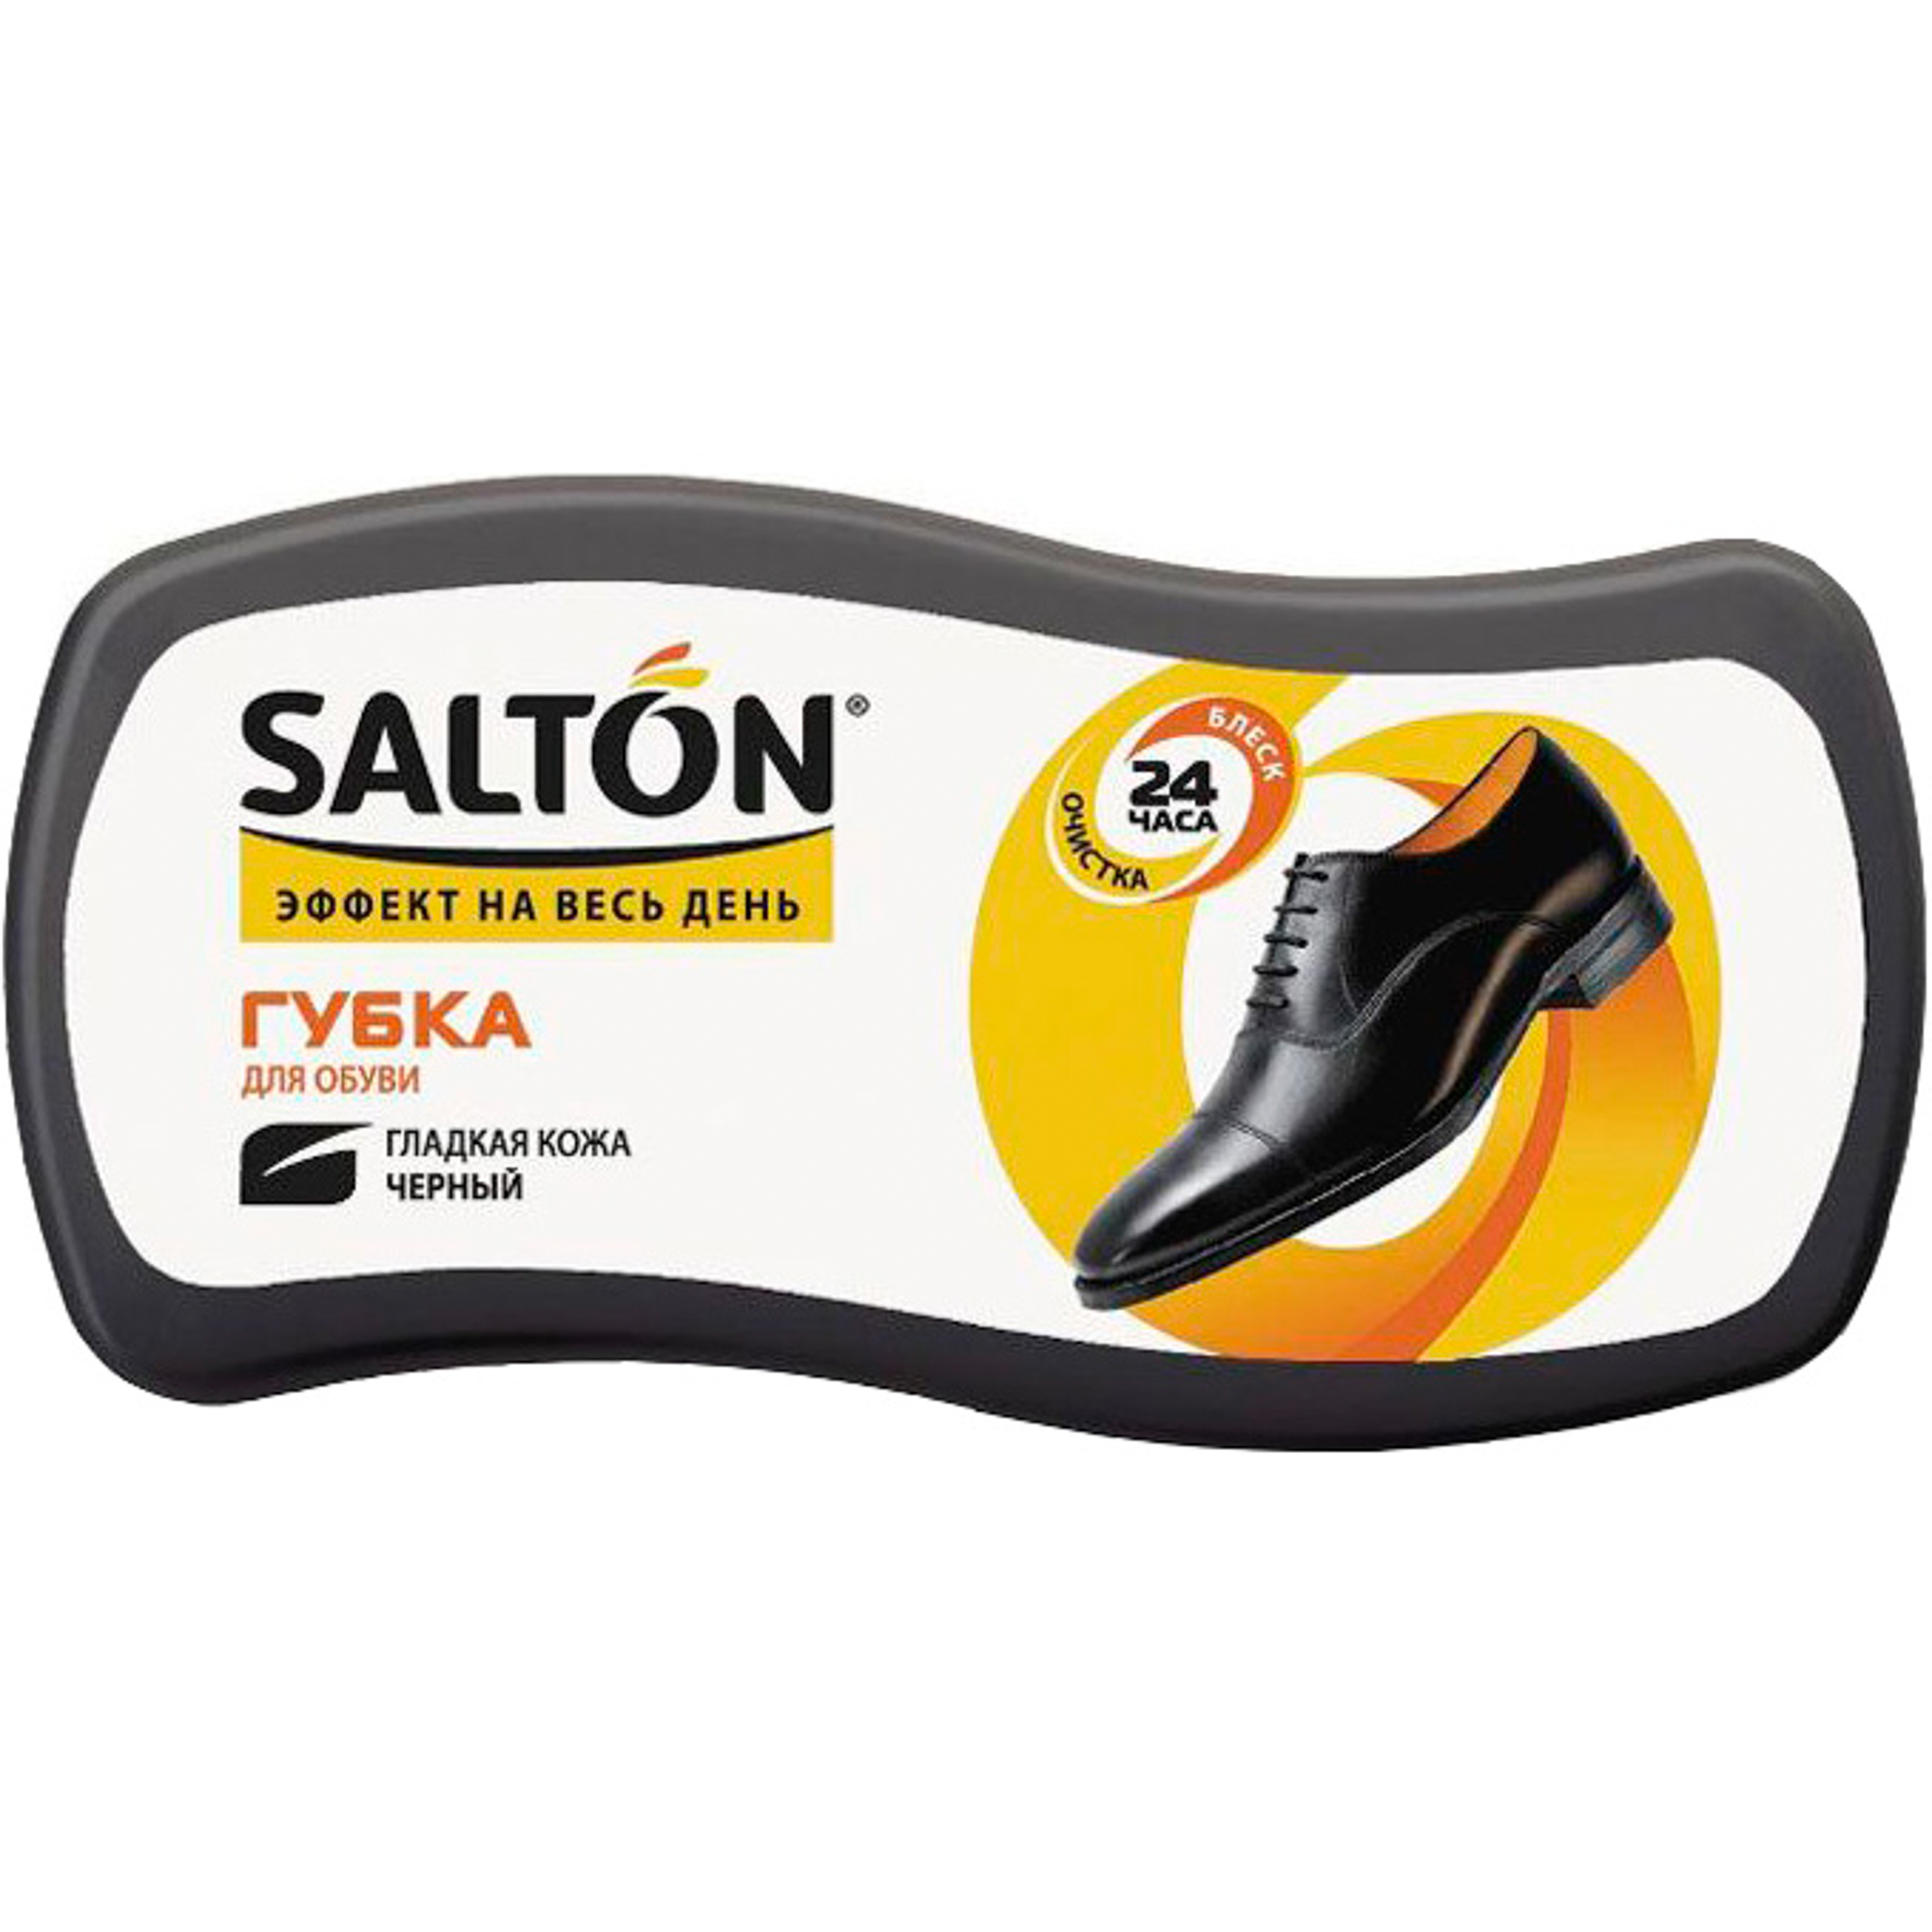 Губка Salton Волна для обуви из гладкой кожи 52/09 salton губка аэроблеск для обуви из гладкой кожи бесцветный